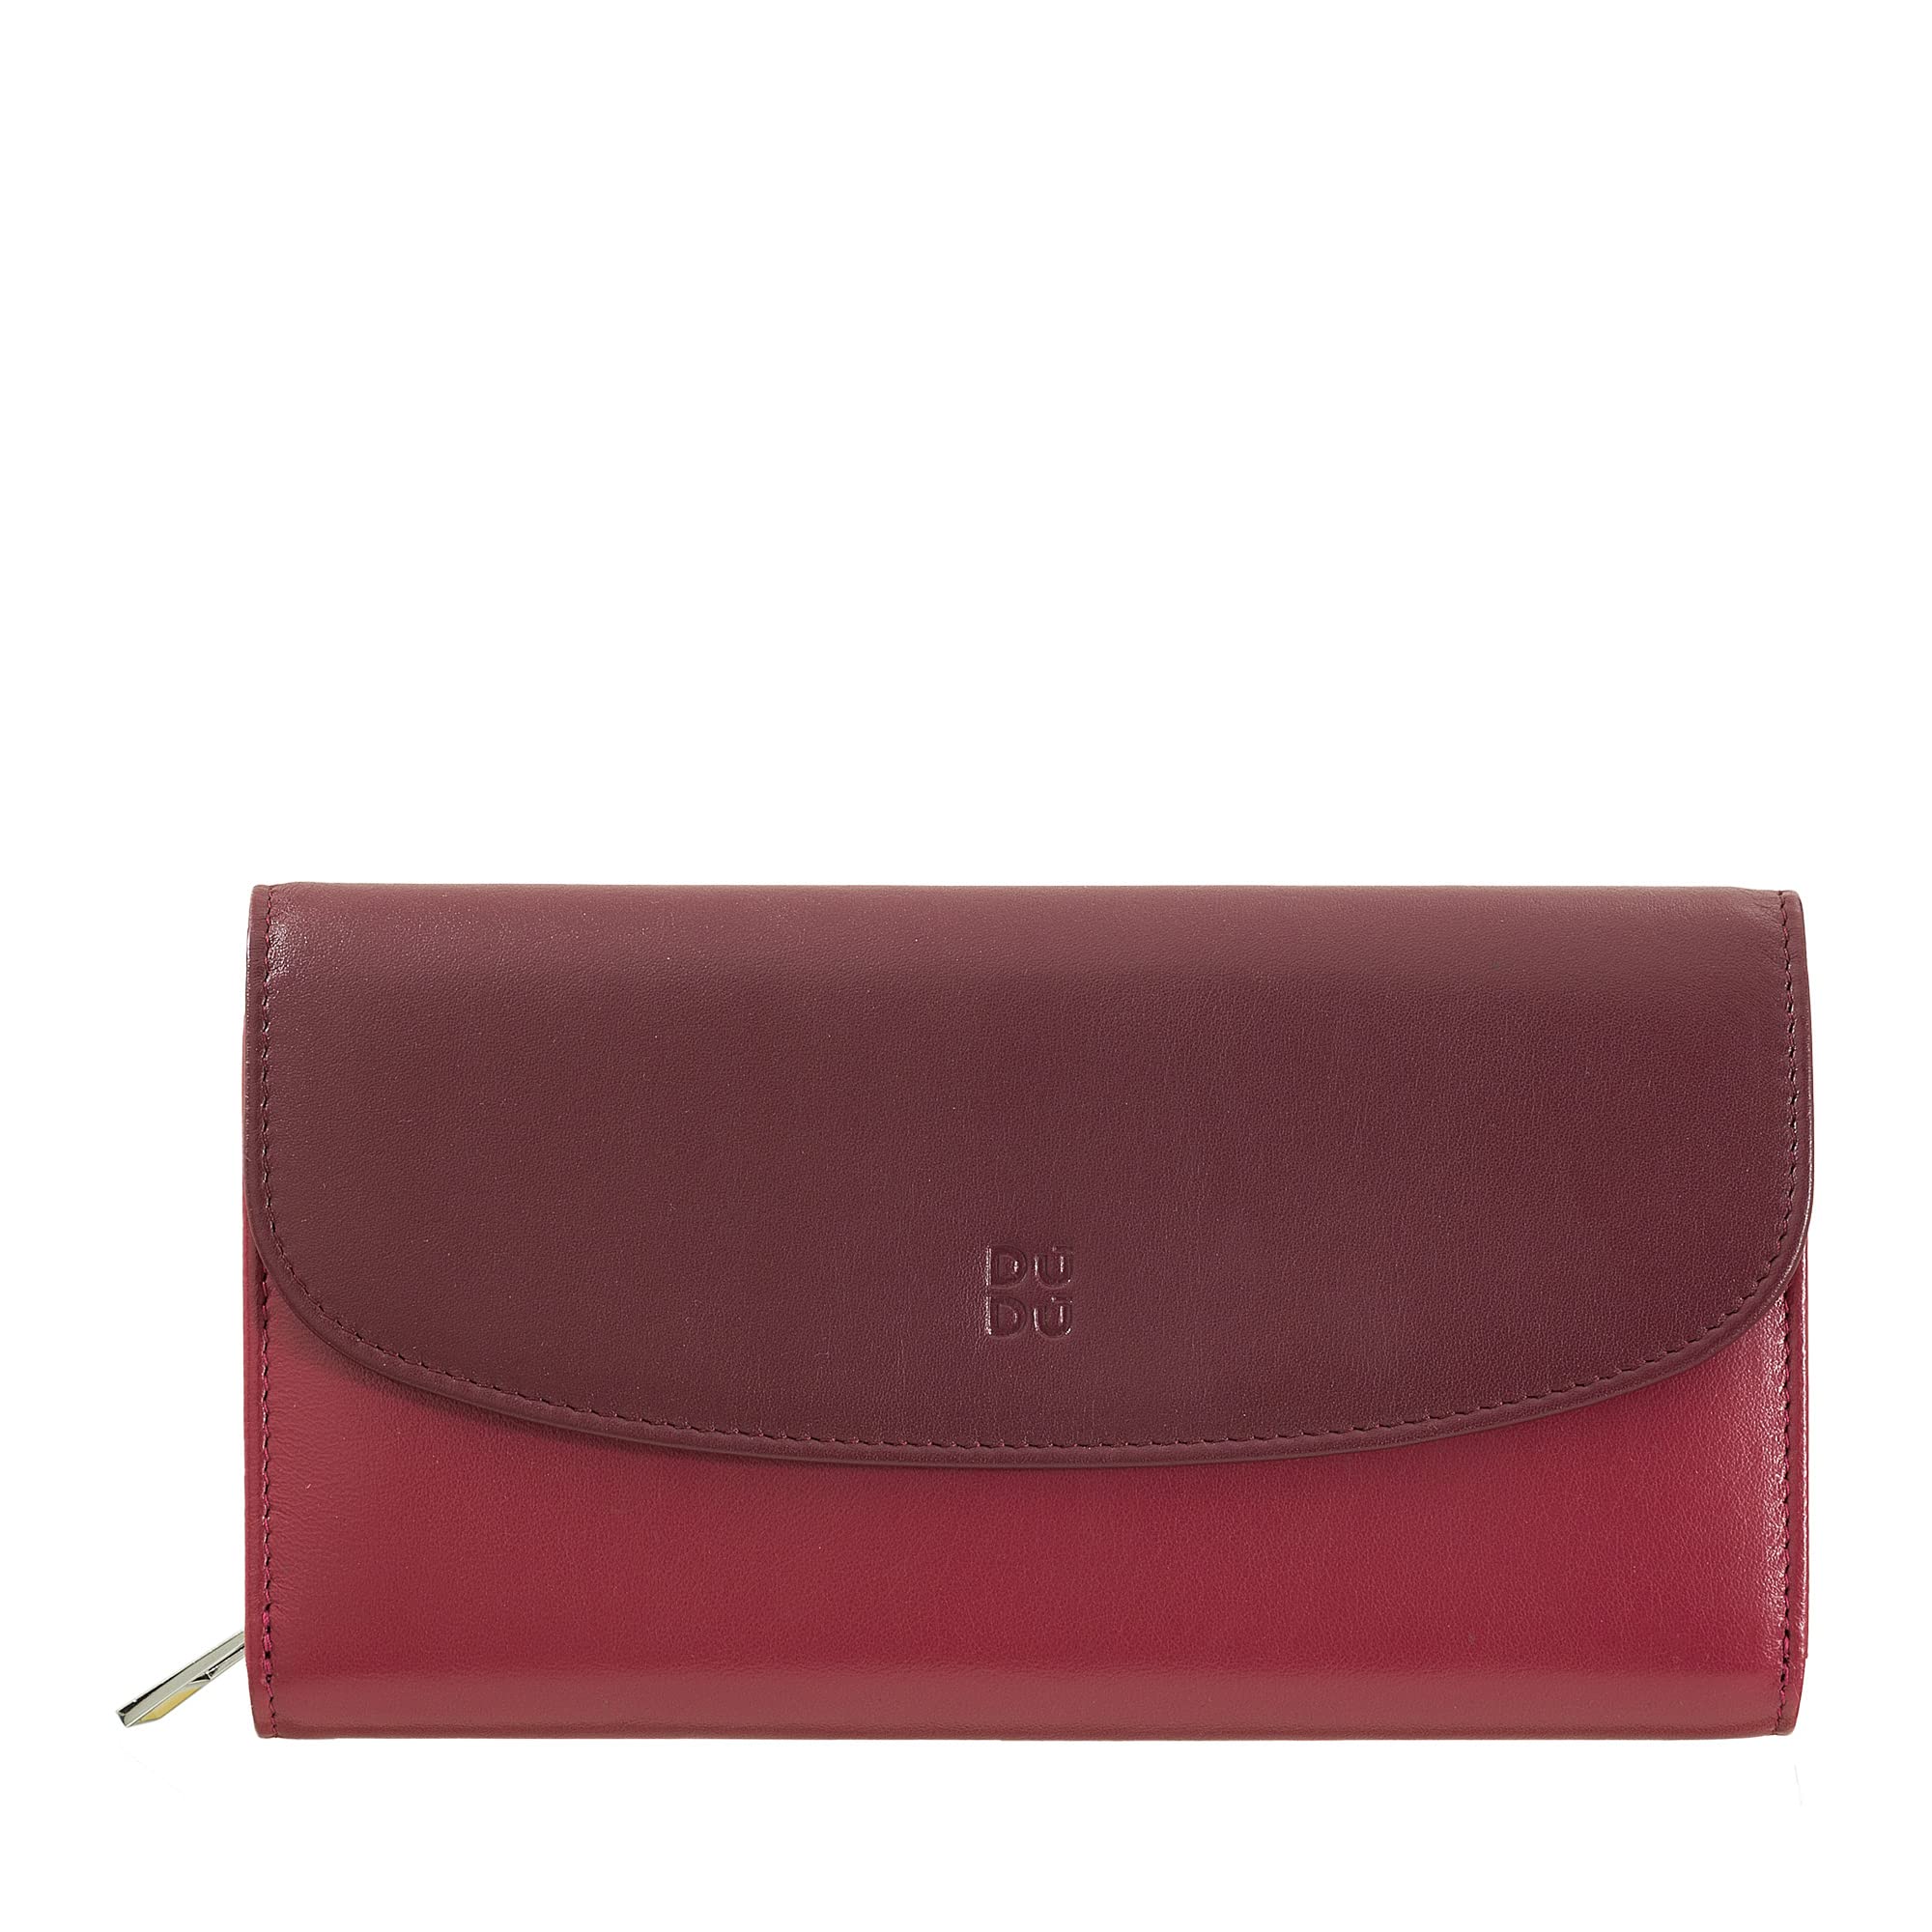 DUDU Damen Portemonnaie aus echtem Leder, RFID-geschützt, Brieftasche mit Reißverschluss, mehrere Fächer Burgundy